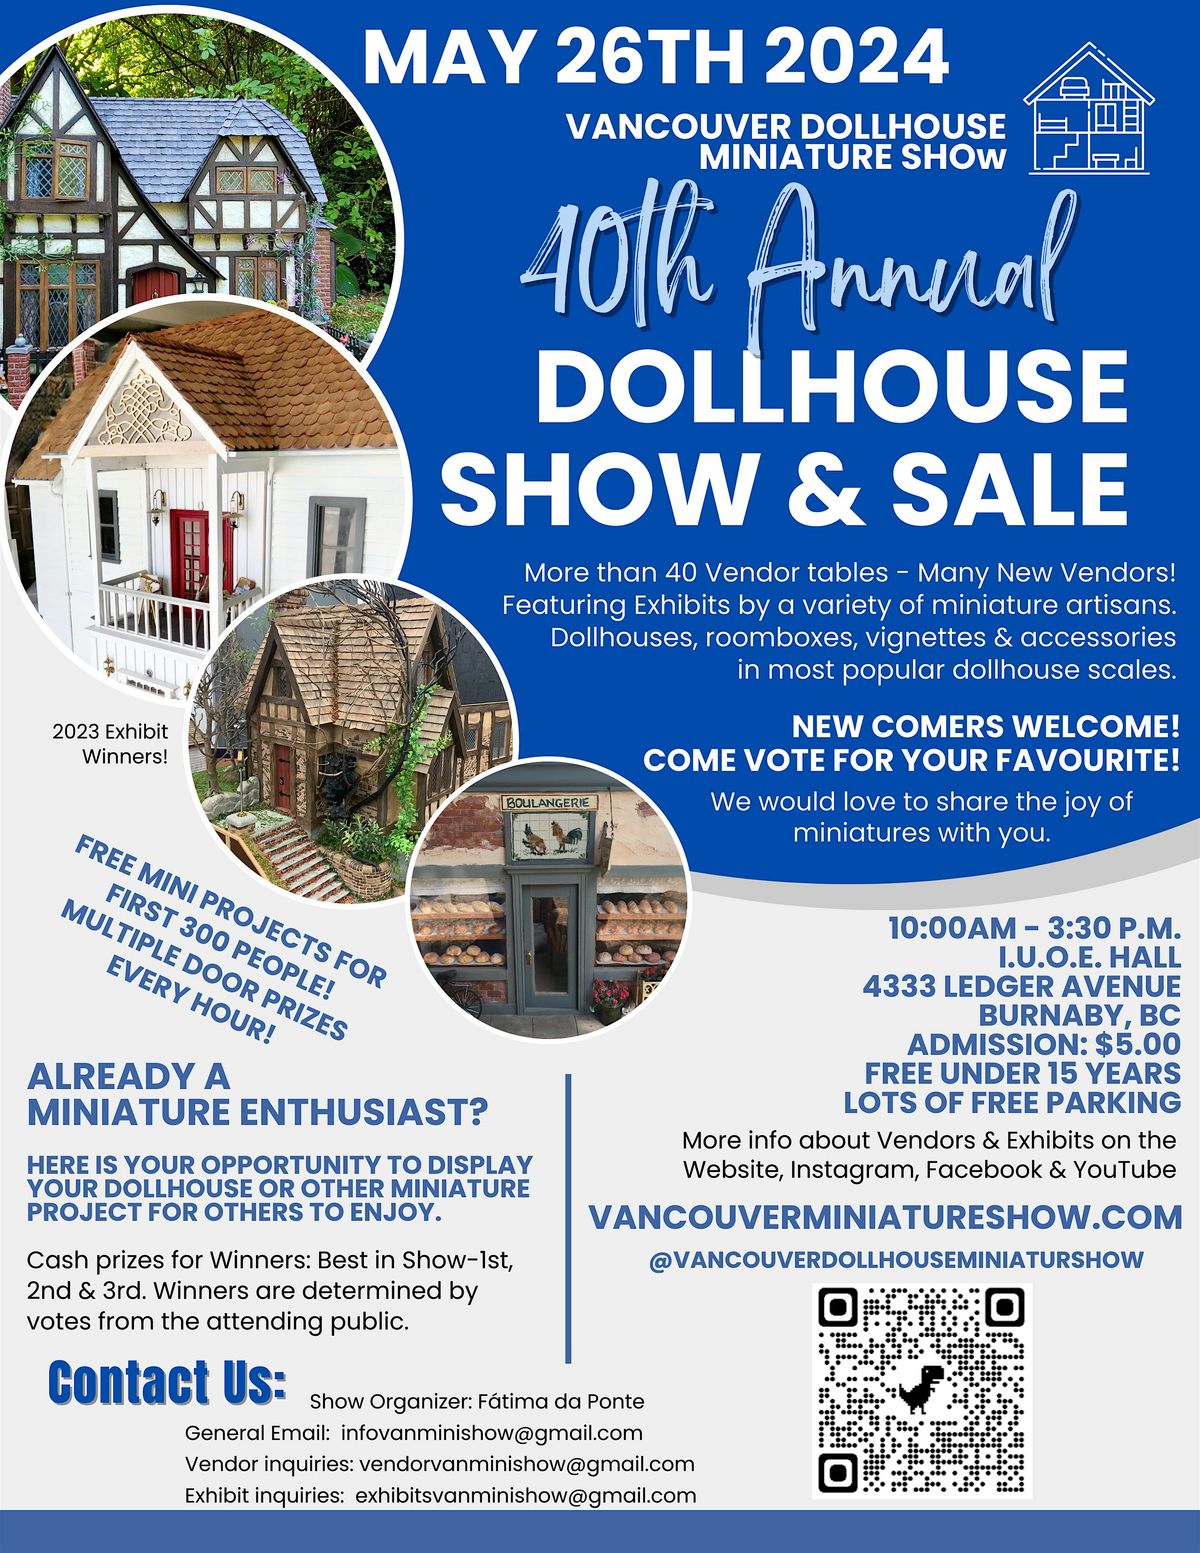 Vancouver Dollhouse Miniature Show & Sale